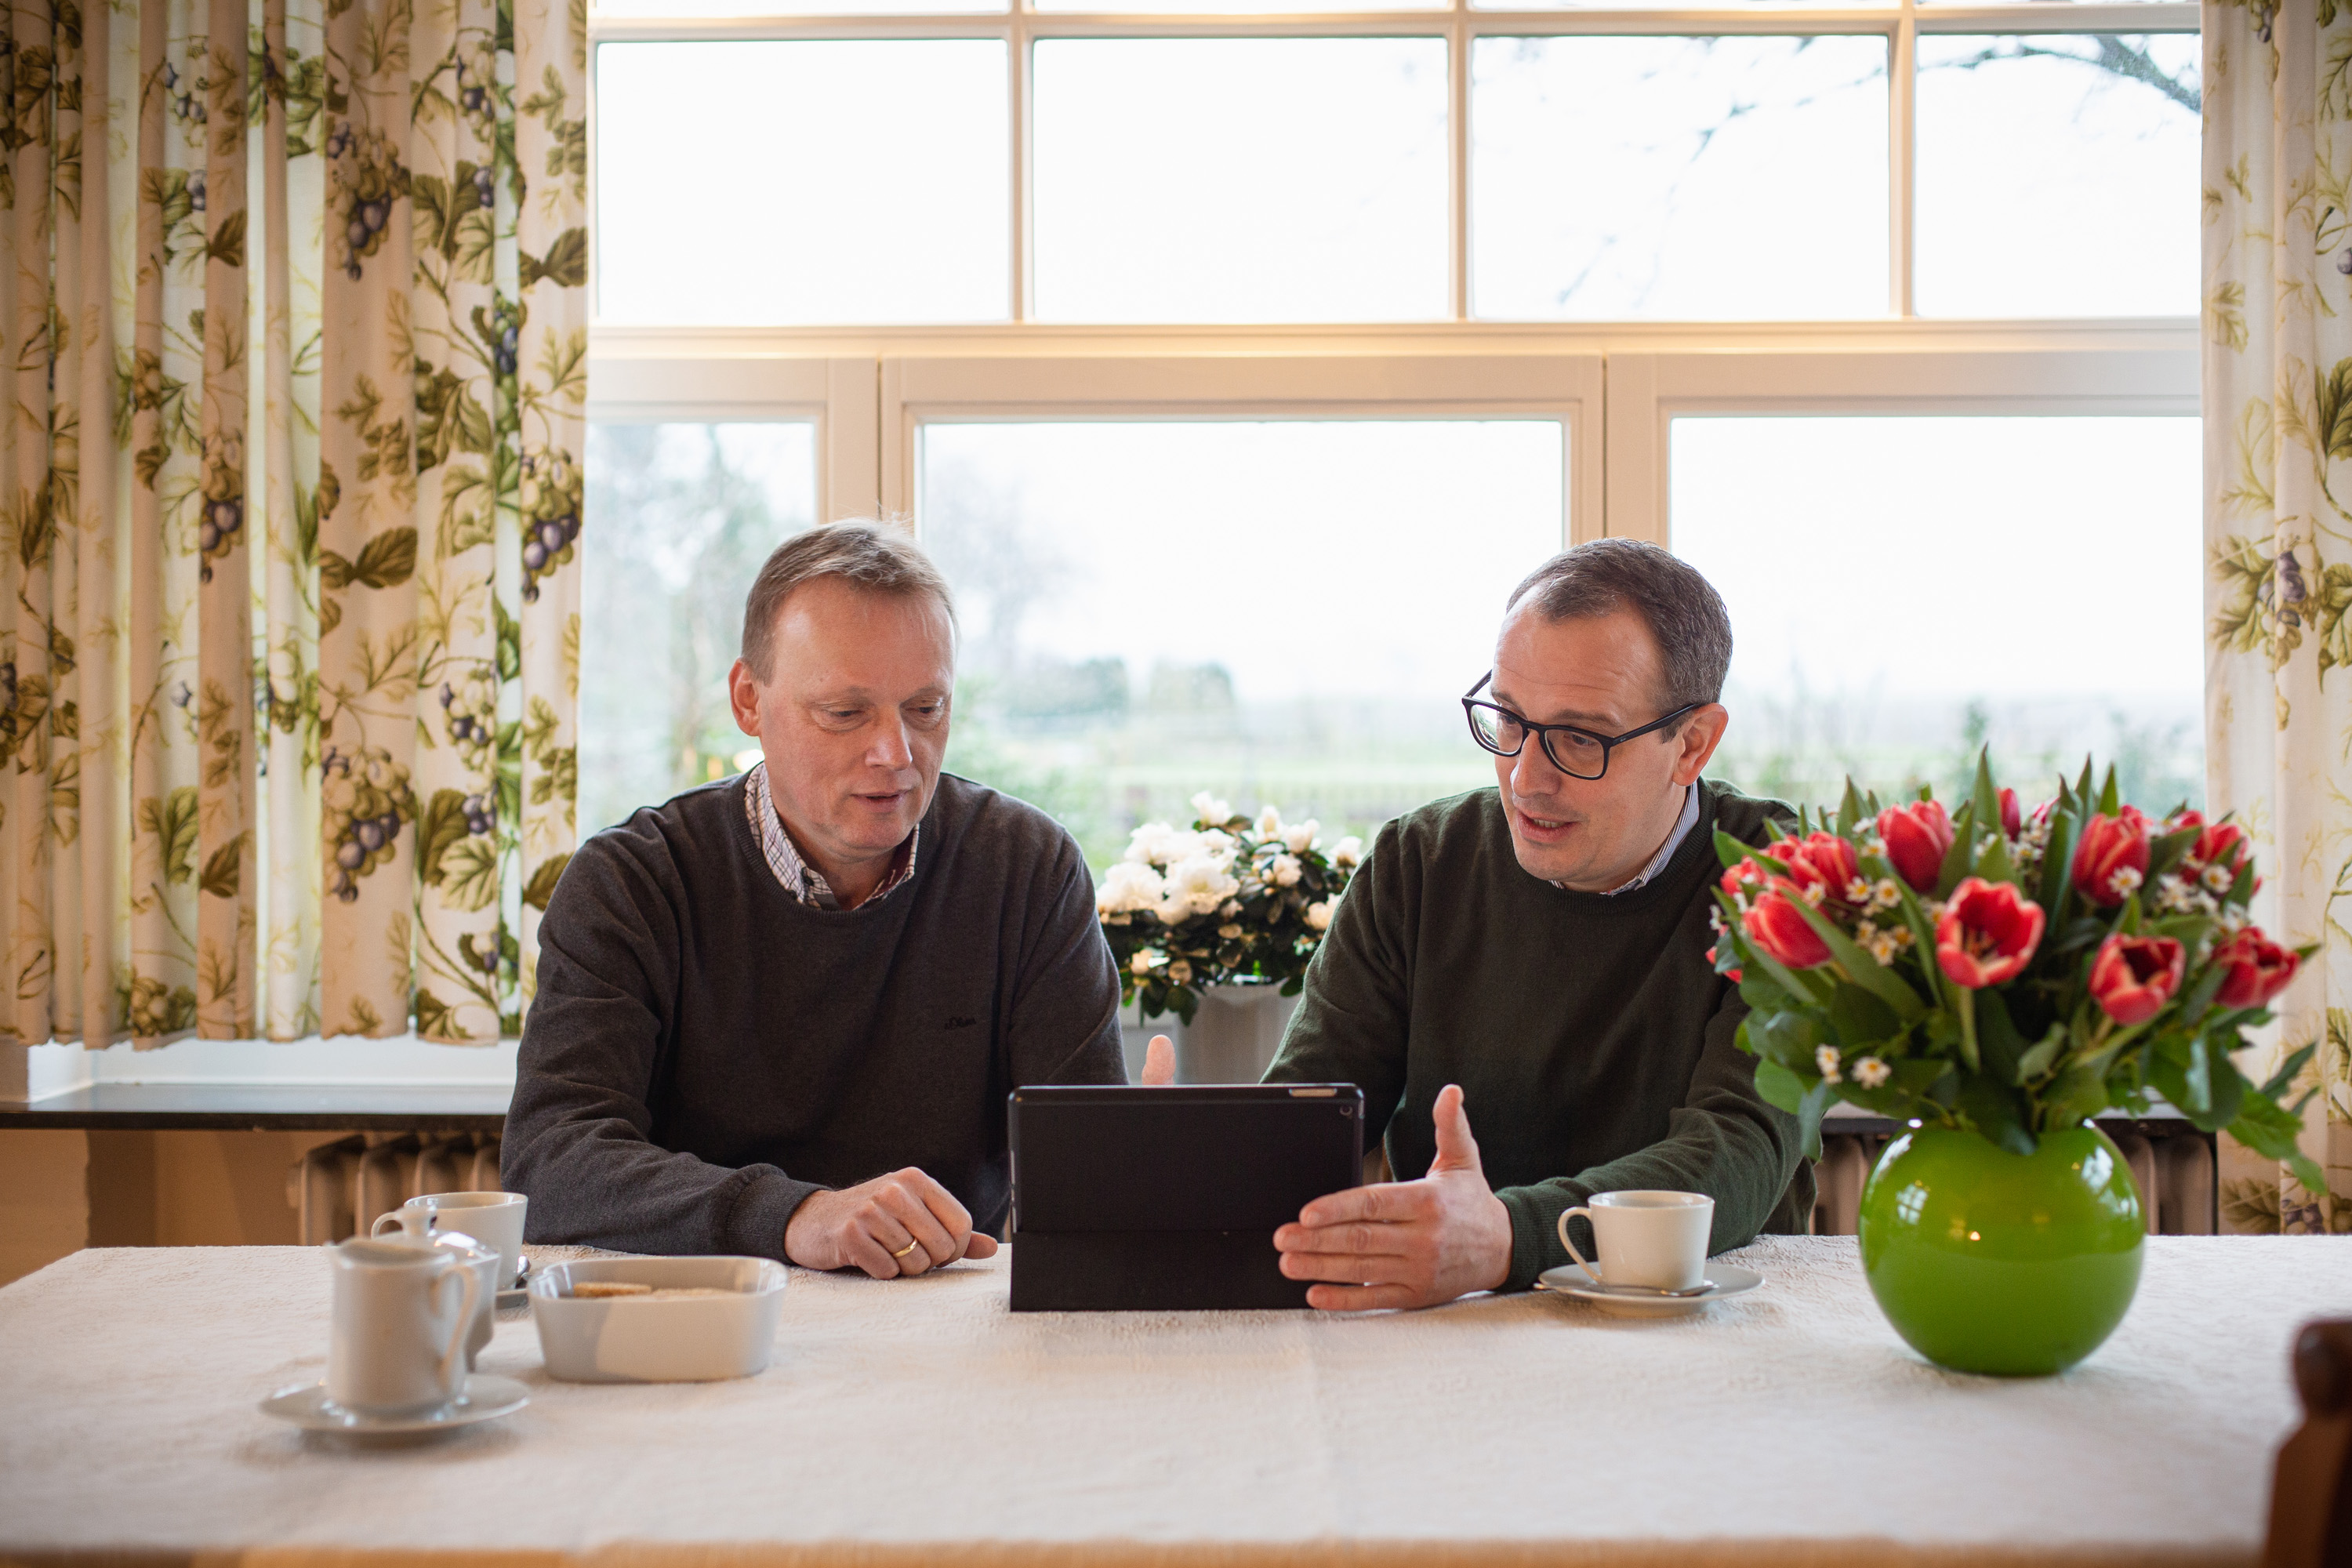 KWS-Saatgutberater Fritz-Jürgen Lutterloh und Landwirt Christian Flögel sitzen am Kaffeetisch und begutachten Daten auf einem iPad.